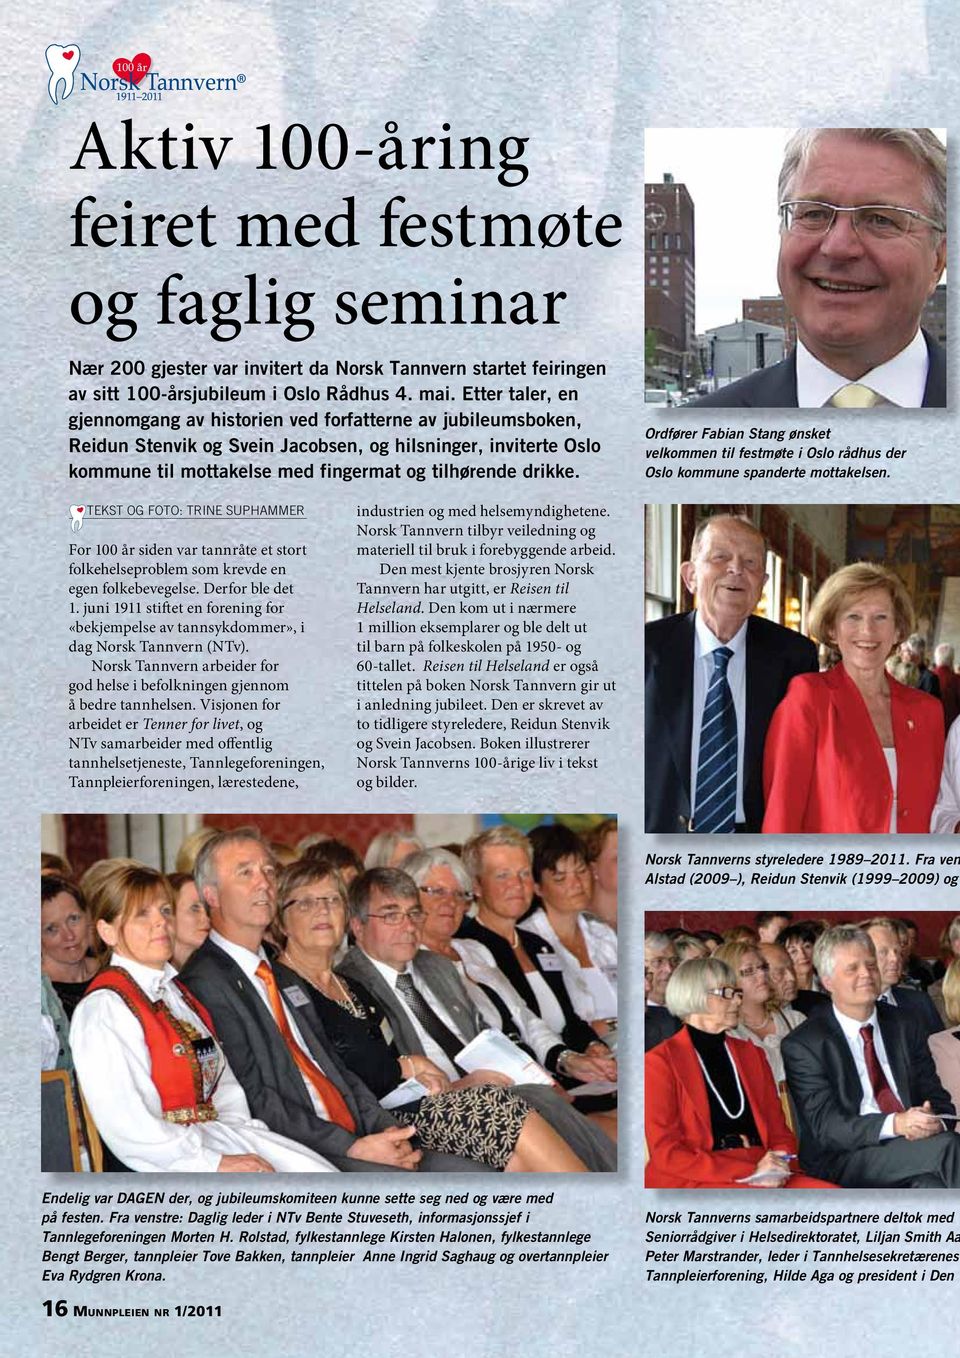 Ordfører Fabian Stang ønsket velkommen til festmøte i Oslo rådhus der Oslo kommune spanderte mottakelsen.